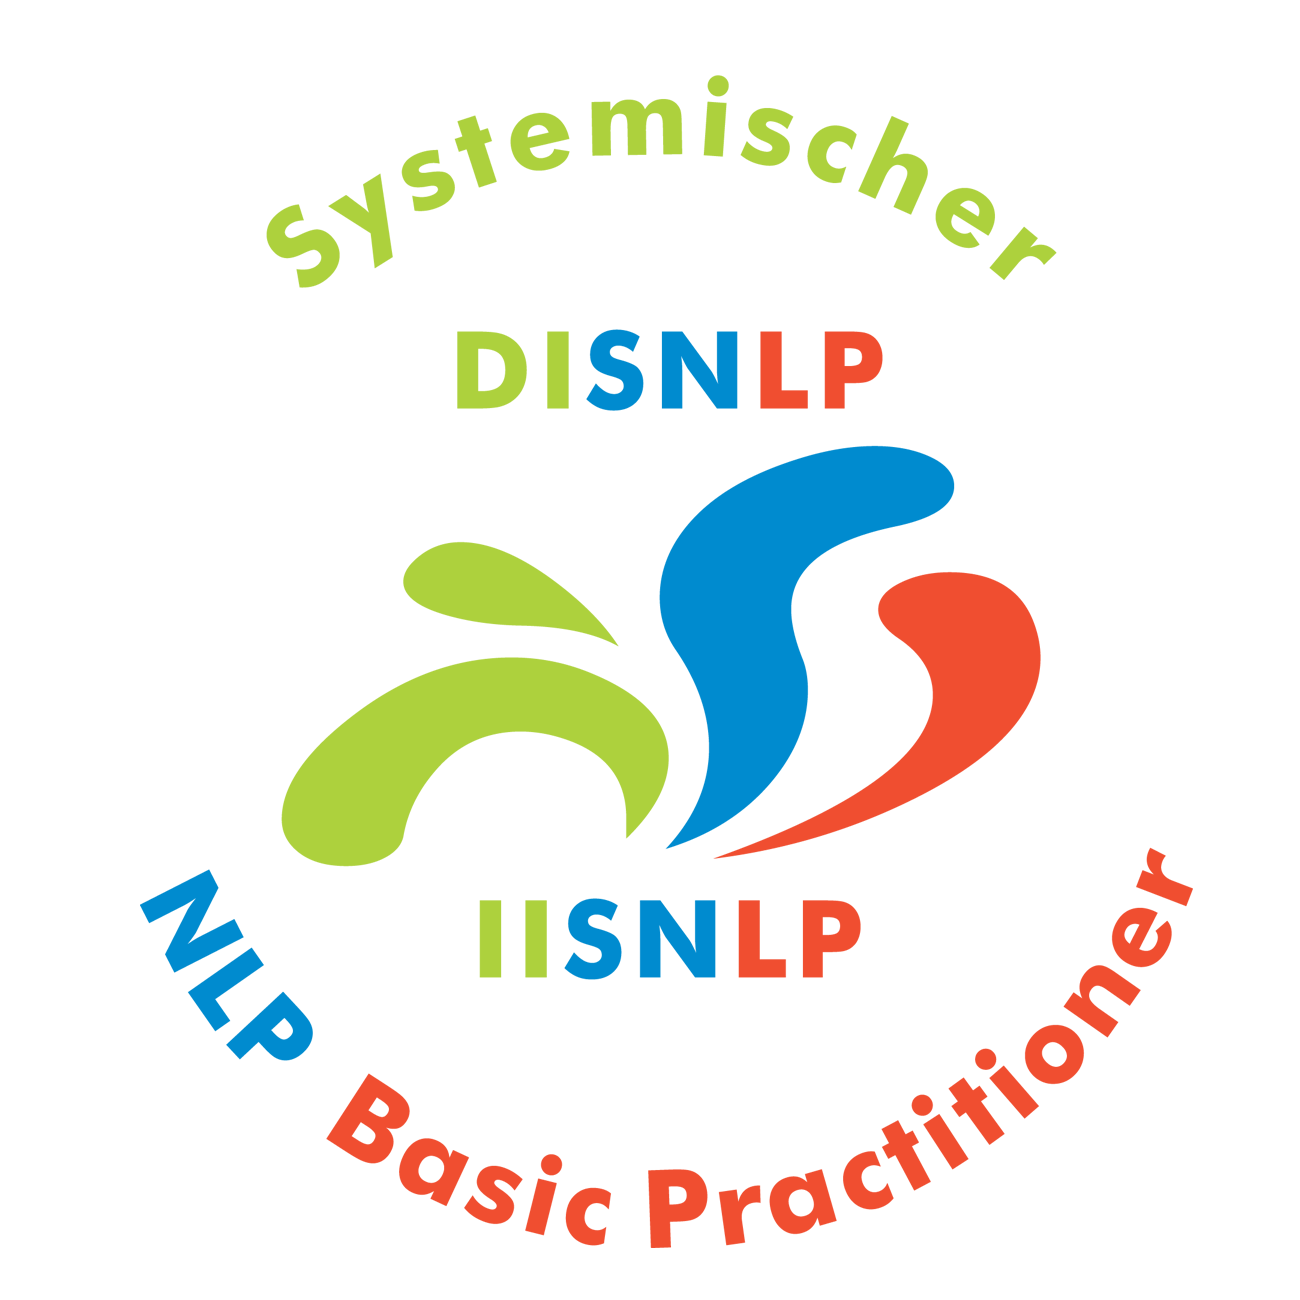 Seminar Selbstbewusstsein, Selbstvertrauen, Selbstwert, Selbstsicherheit stärken Mainz Bingen Landkreis mit NLP Coaching Kurs für mehr Selbstbewusstsein